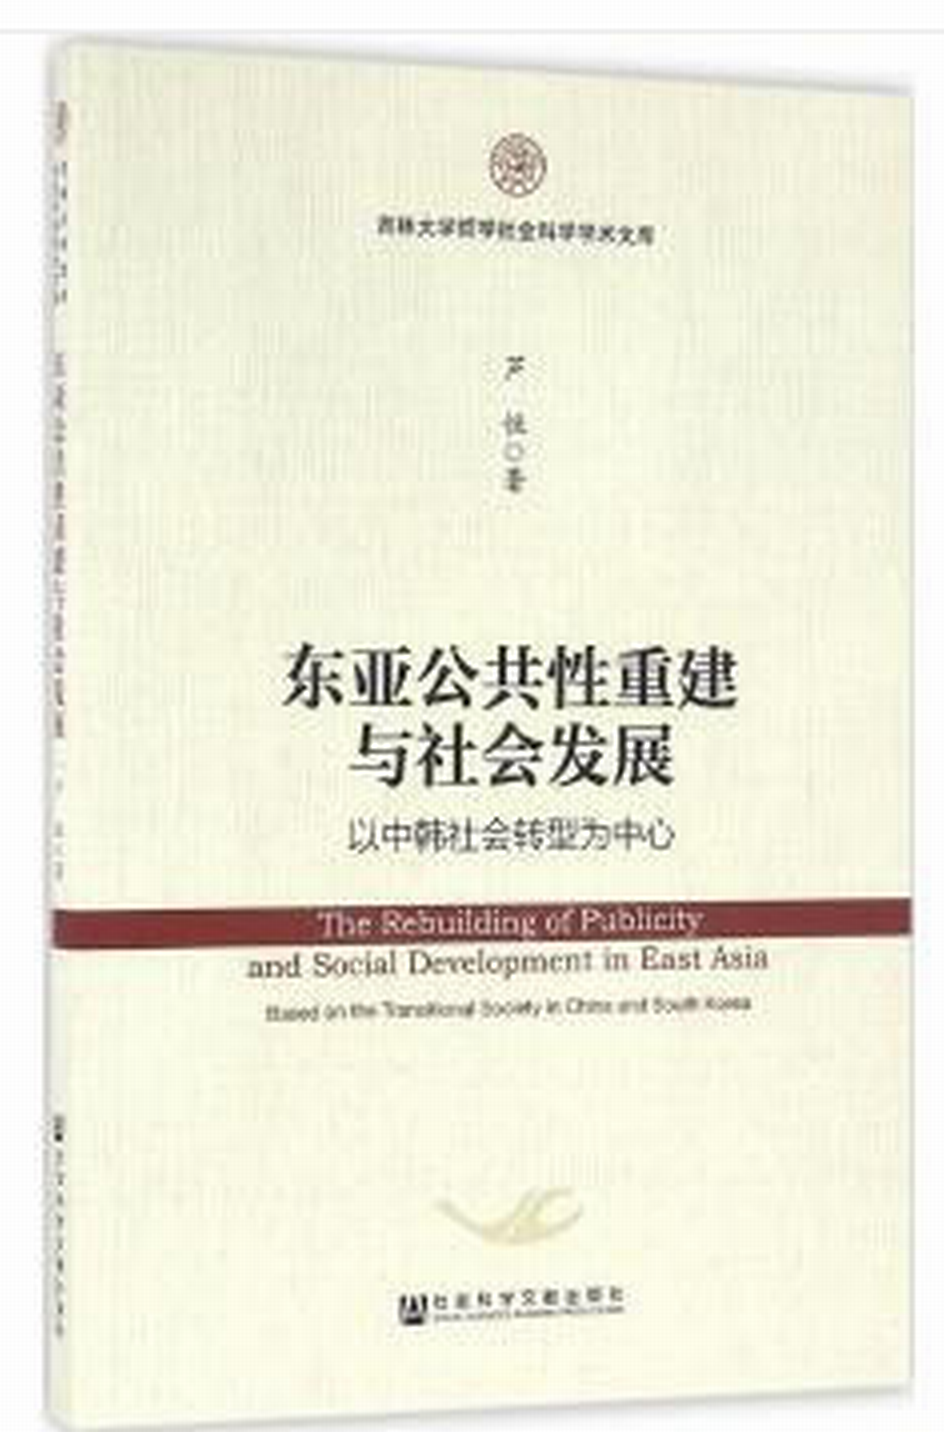 東亞公共性重建與社會發展：以中韓社會轉型為中心